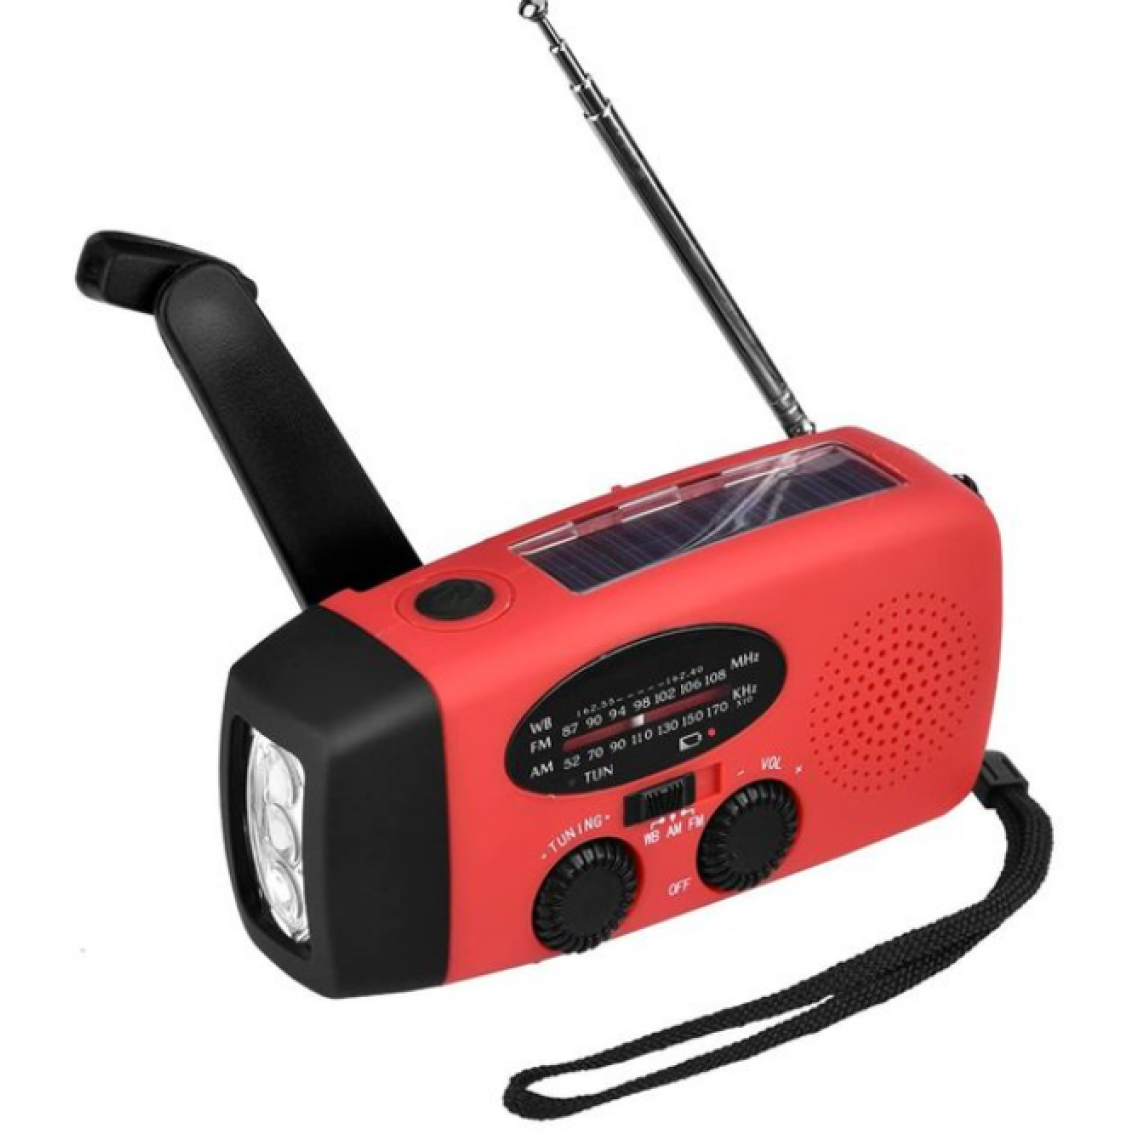 Universal - Radio AM/FM portable d'urgence 5 en 1 1000 mAh Alimentation Banque Manivelle Autonome AM/FM/NOAA Radio solaire avec 3 lampes de poche LED(Rouge) - Radio